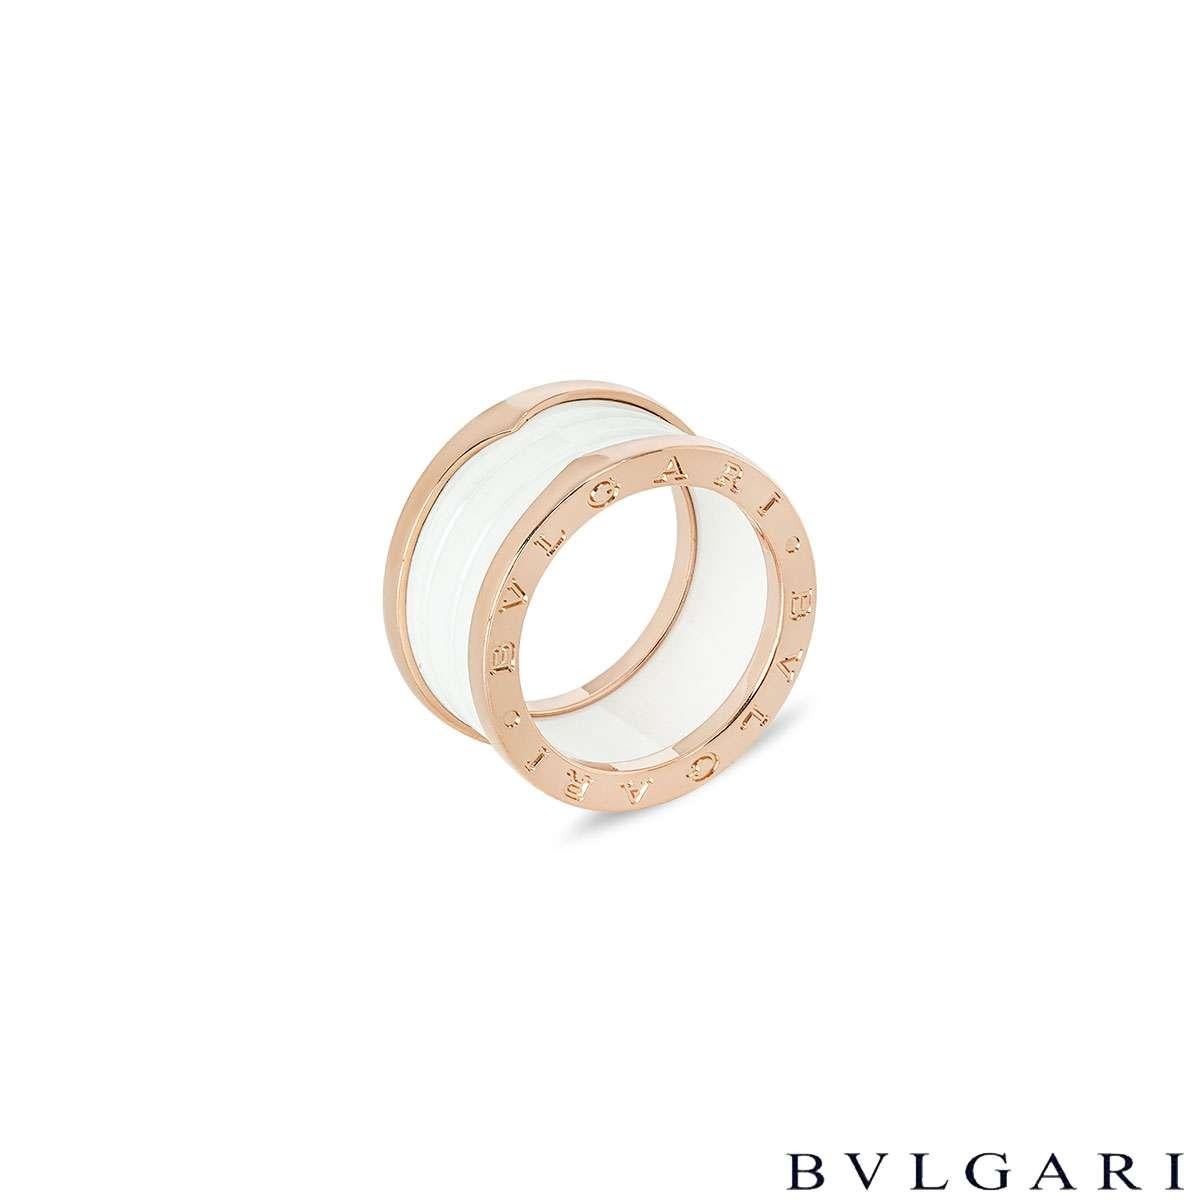 Une superbe bague en or rose 18 carats de Bvlgari, de la collection B.Zero1. Whiting est composé d'une spirale en céramique blanche, entourée de bandes d'or rose sur le dessus et le dessous. Le logo iconique 'BVLGARI BVLGARI' est gravé sur le